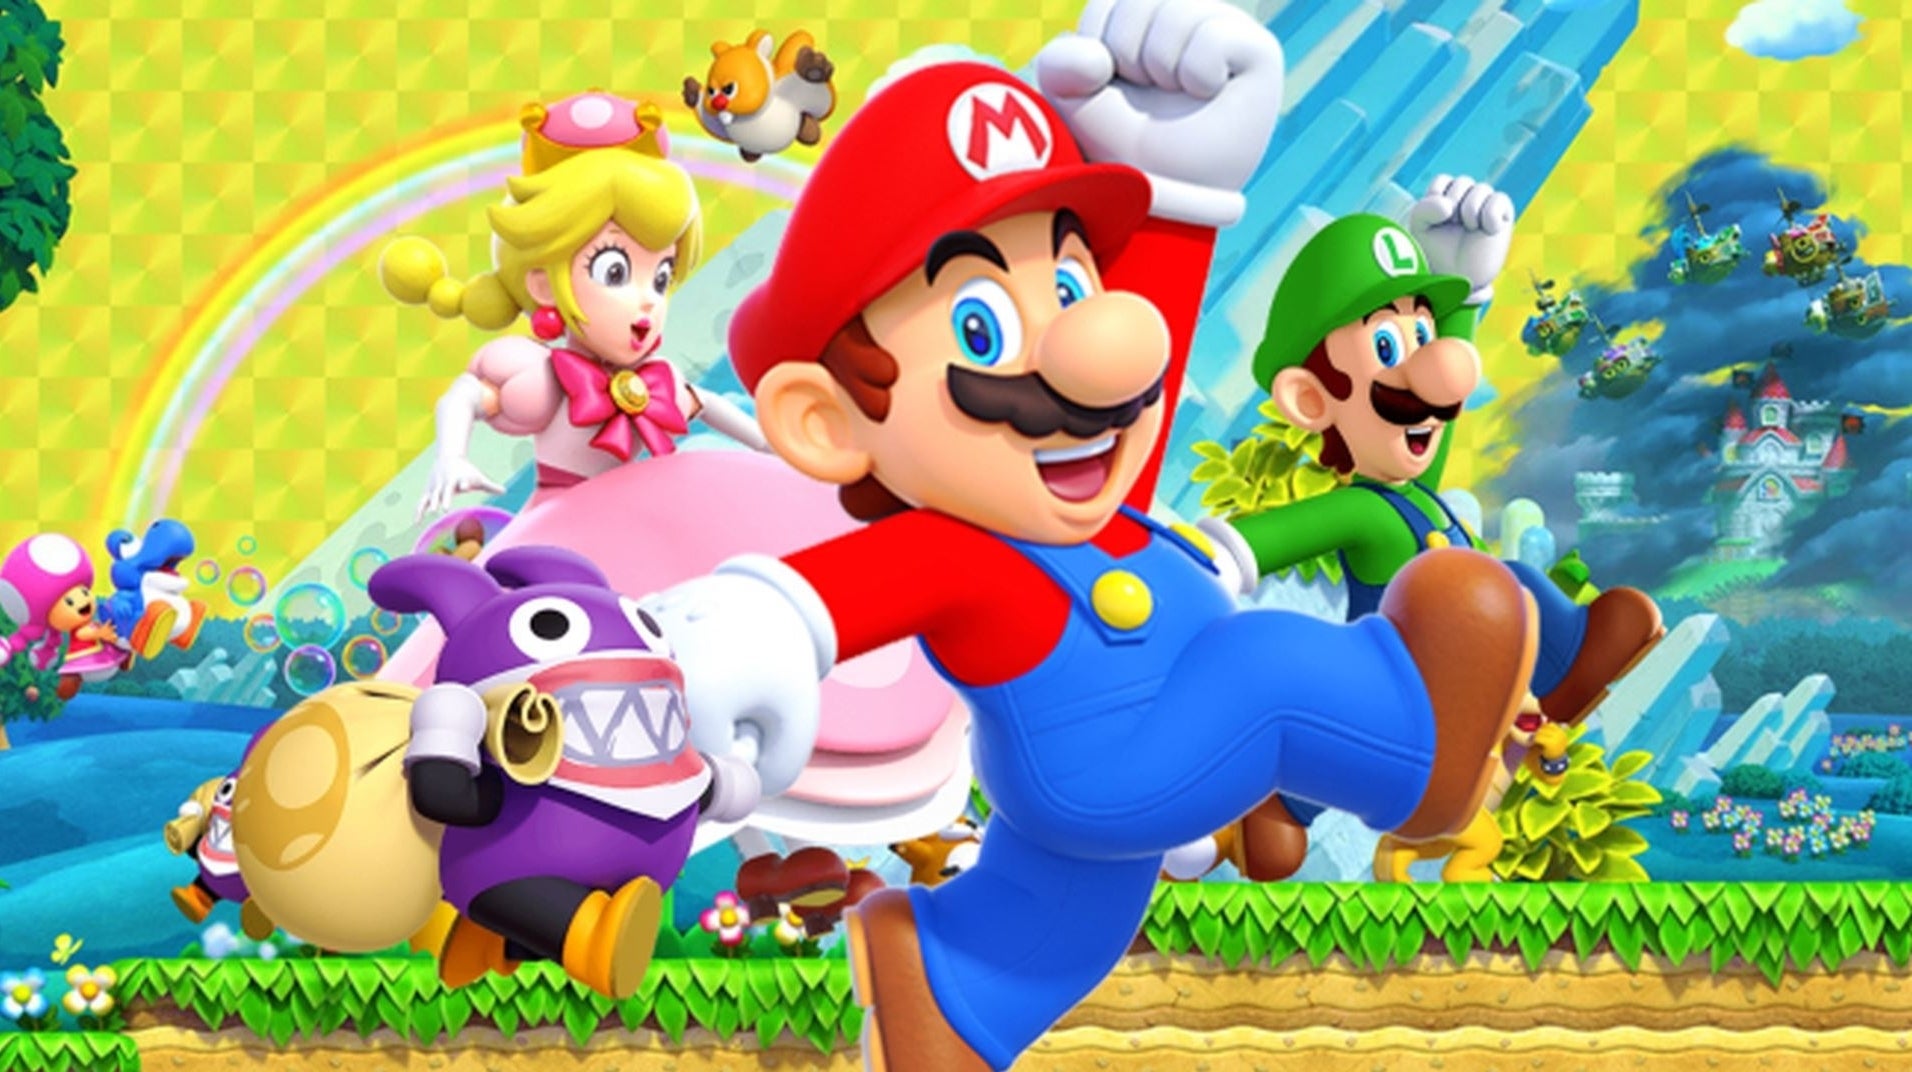 Immagine di Super Mario protagonista della linea di abbigliamento Levi's in vendita da oggi